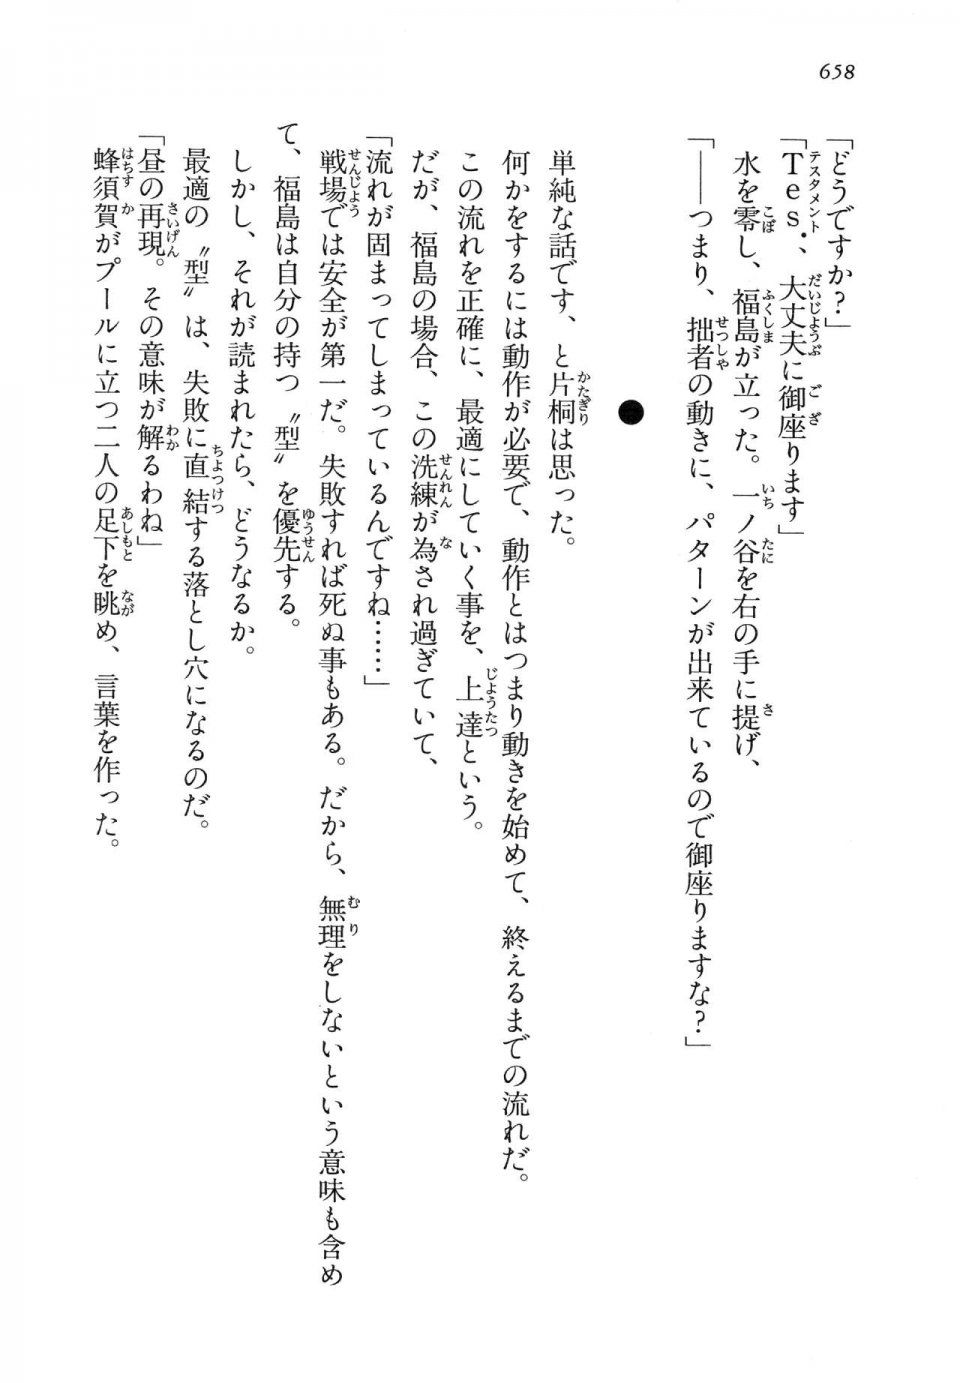 Kyoukai Senjou no Horizon LN Vol 14(6B) - Photo #658